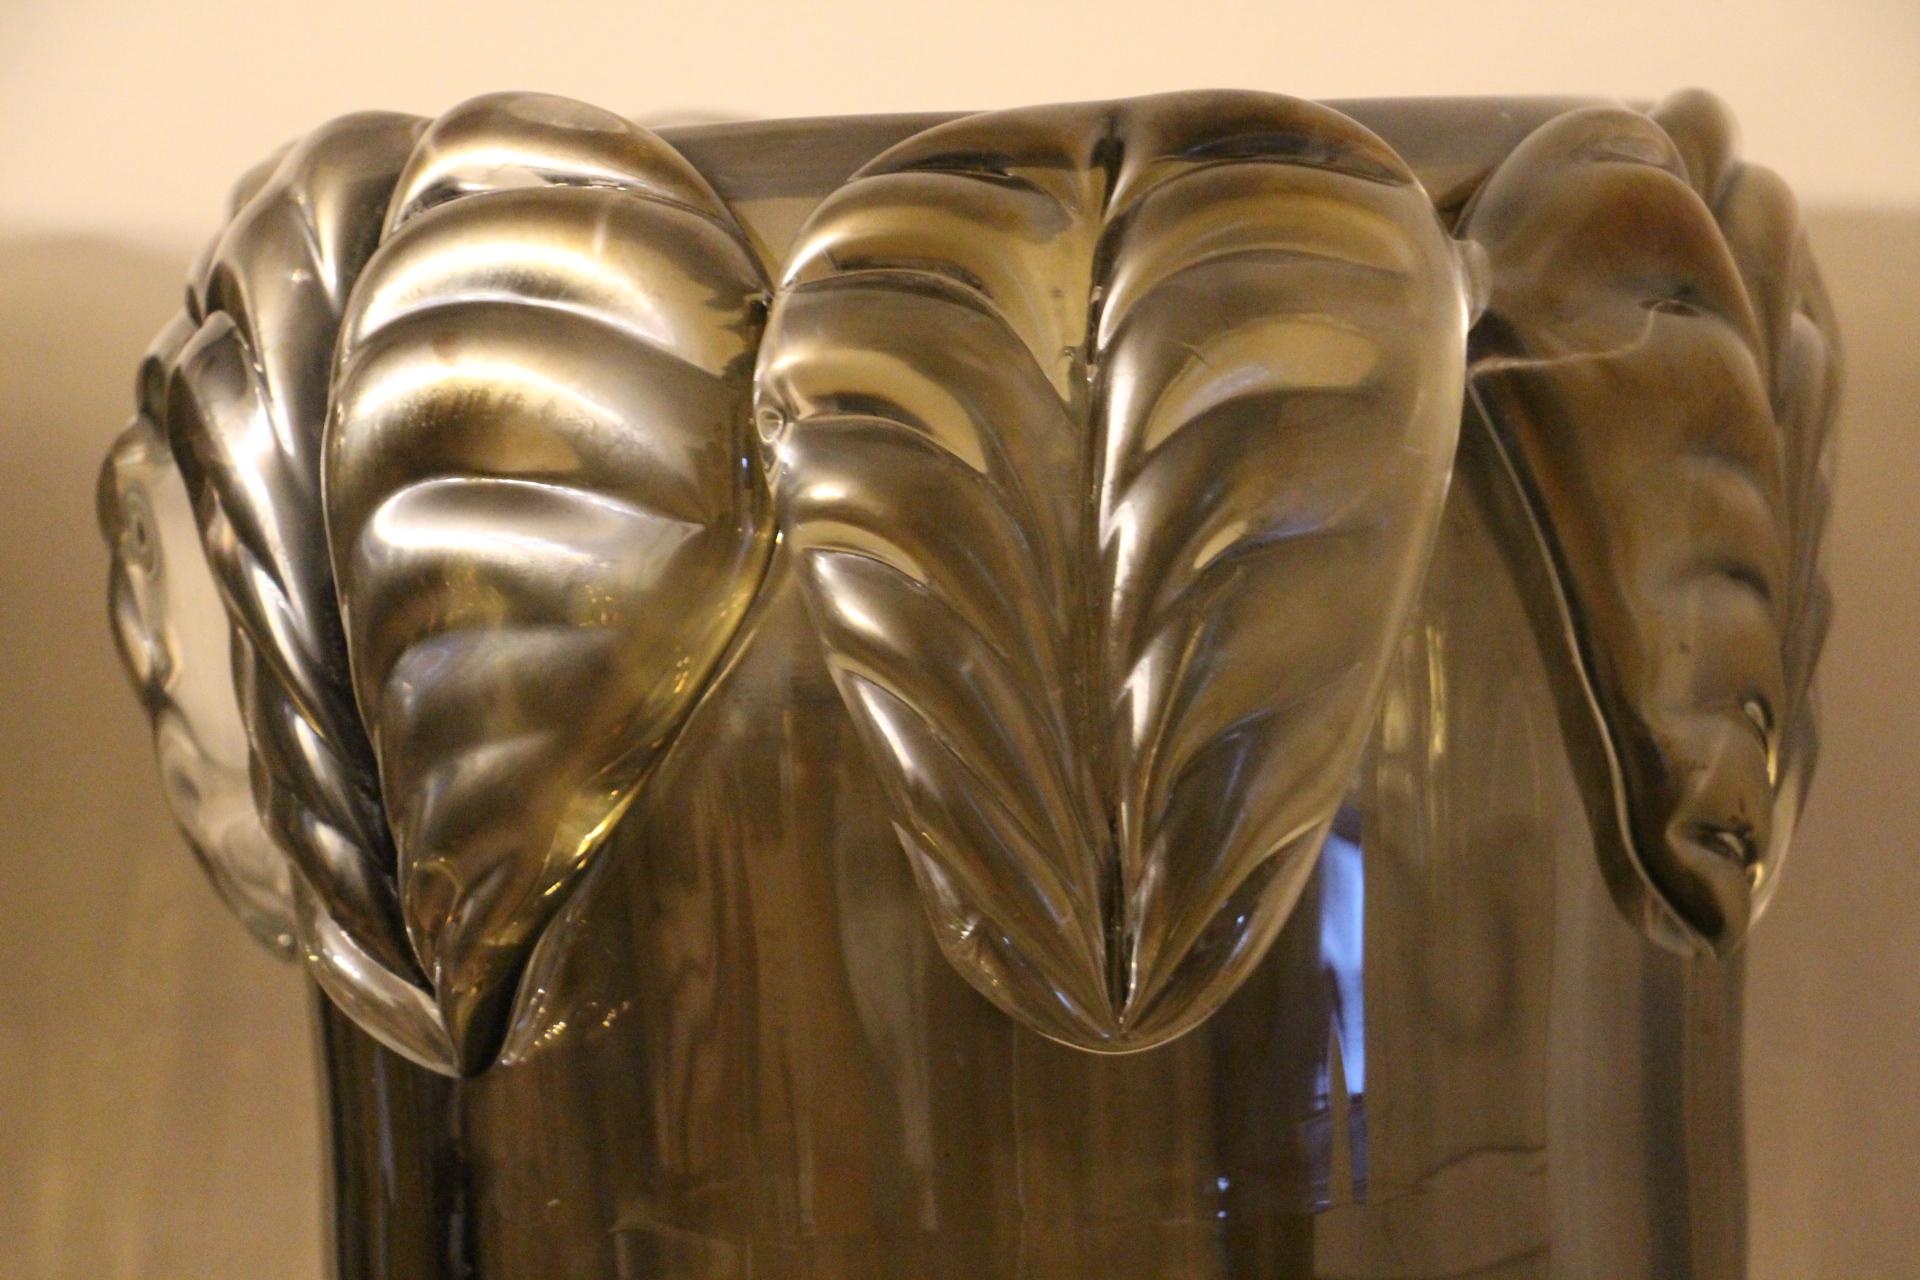 Dieses spektakuläre Vasenpaar hat eine sehr ungewöhnliche schillernde Farbe, die je nach Umgebungsfarbe und -licht von tiefem Rauch bis zu hellem Grau reicht, und weist rundherum viele verschiedene mercerisierte Reflexe auf.
Außerdem wurden sie in